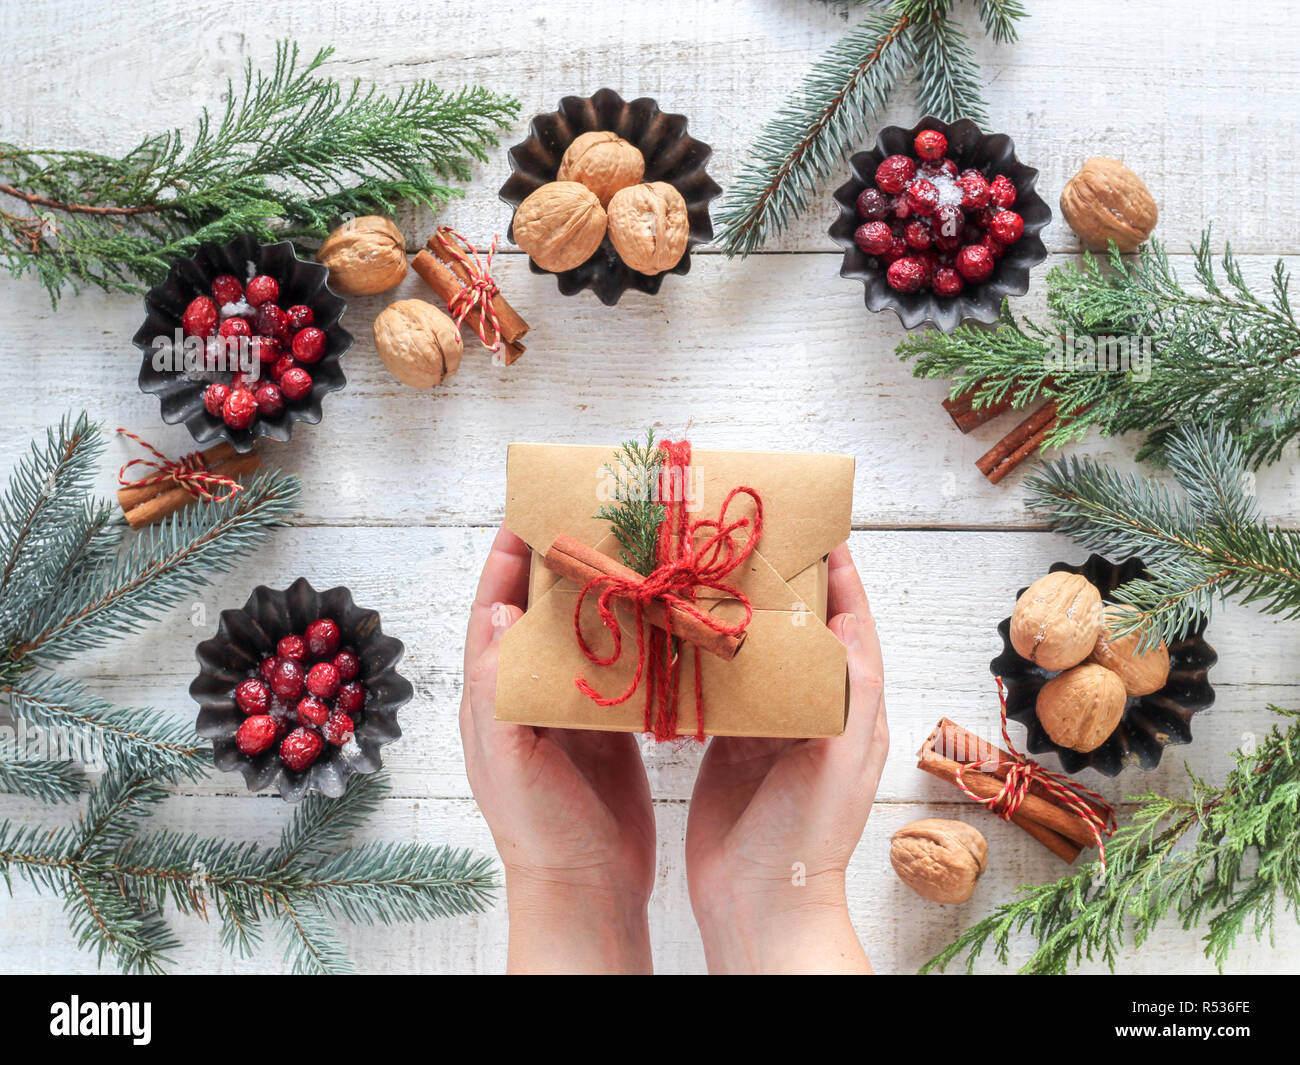 Ambiance de Noël télévision jeter la composition avec les fruits rouges, les noix et les bâtons de cannelle sur un fond en bois blanc et présents dans les mains Banque D'Images